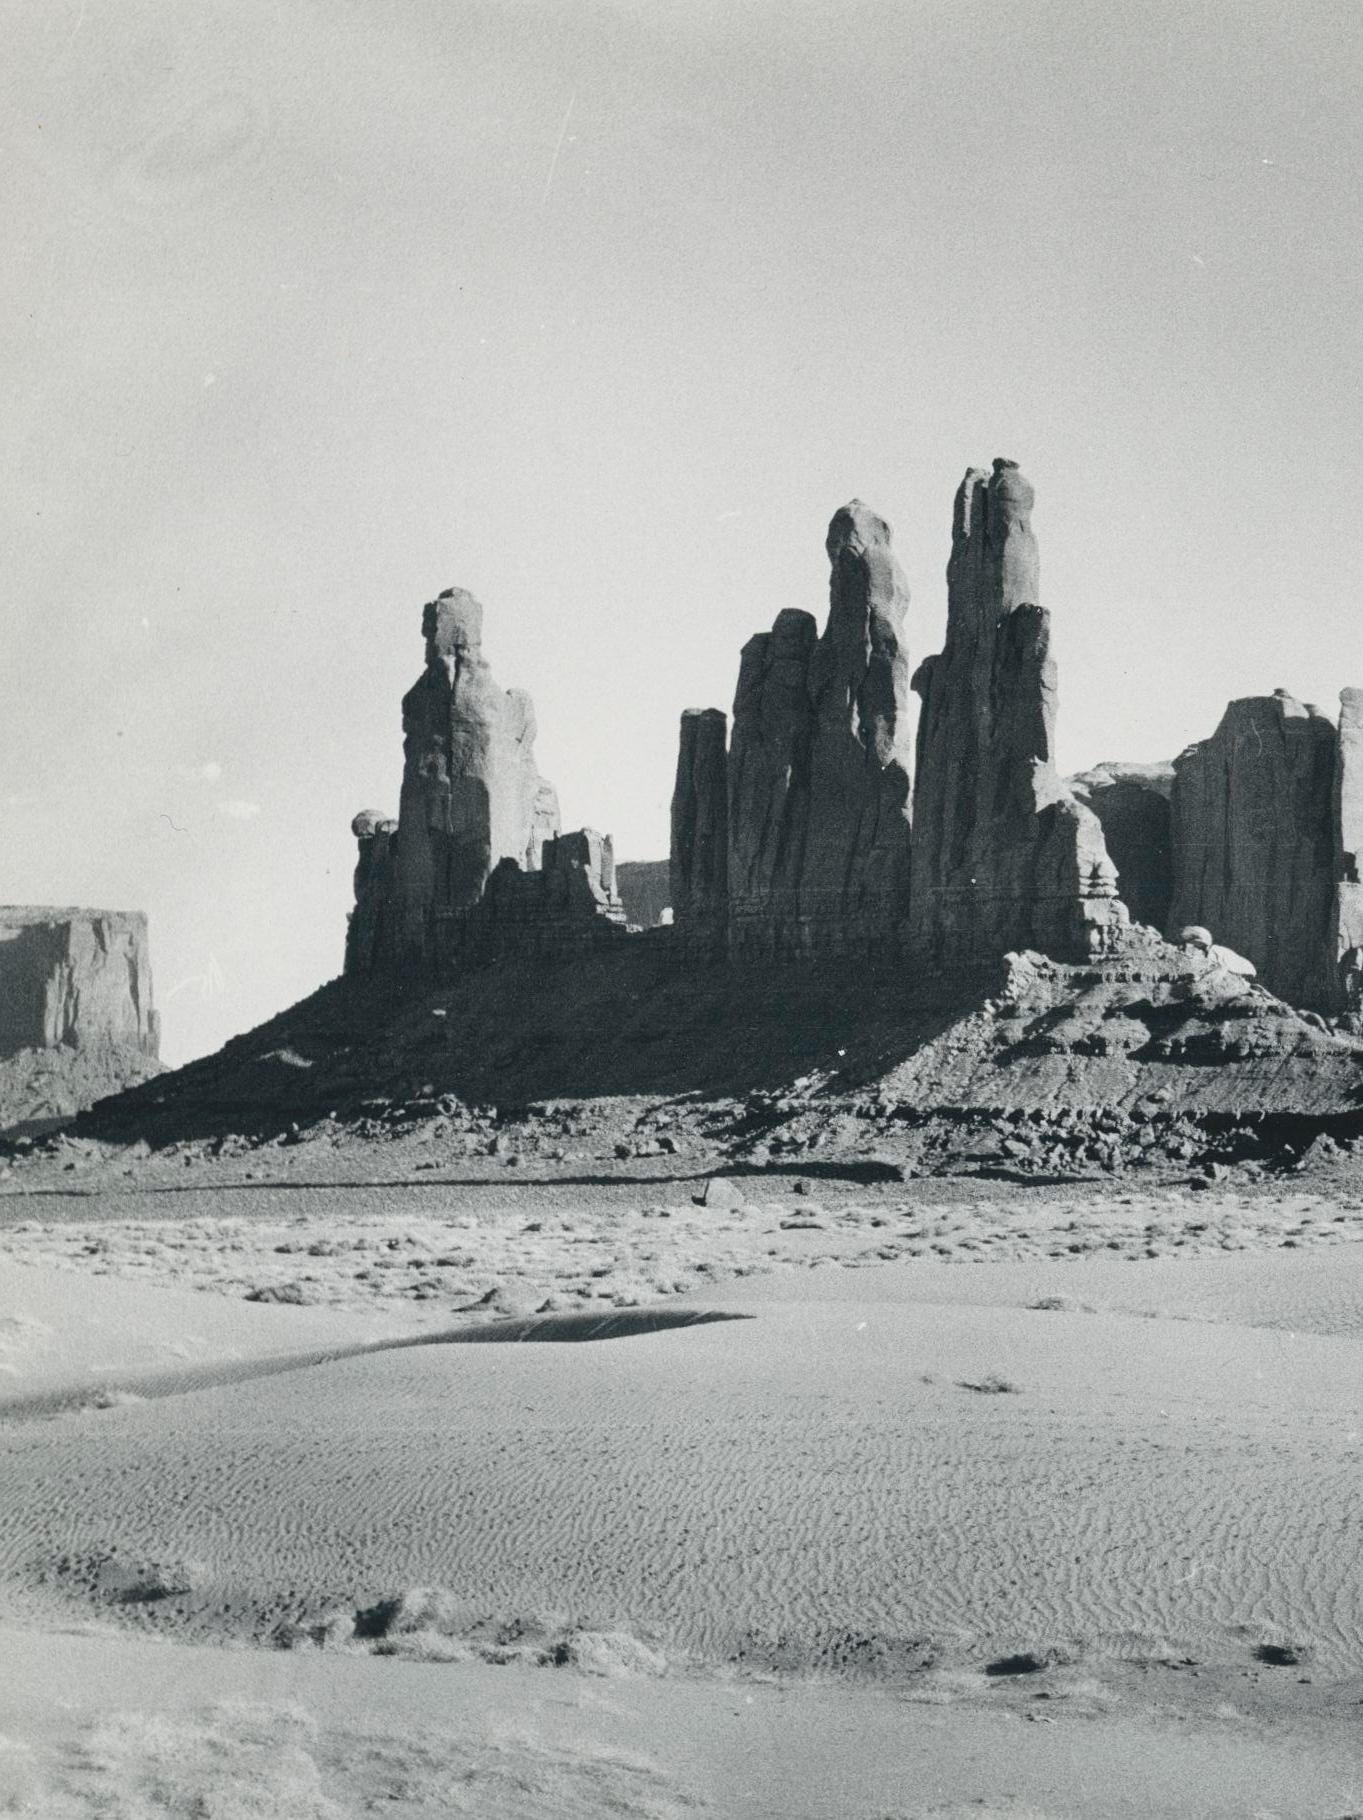 Monument Valley, Utah/Arizona, noir et blanc, USA 1960, 16,7 x 23, 4 cm - Photograph de Erich Andres